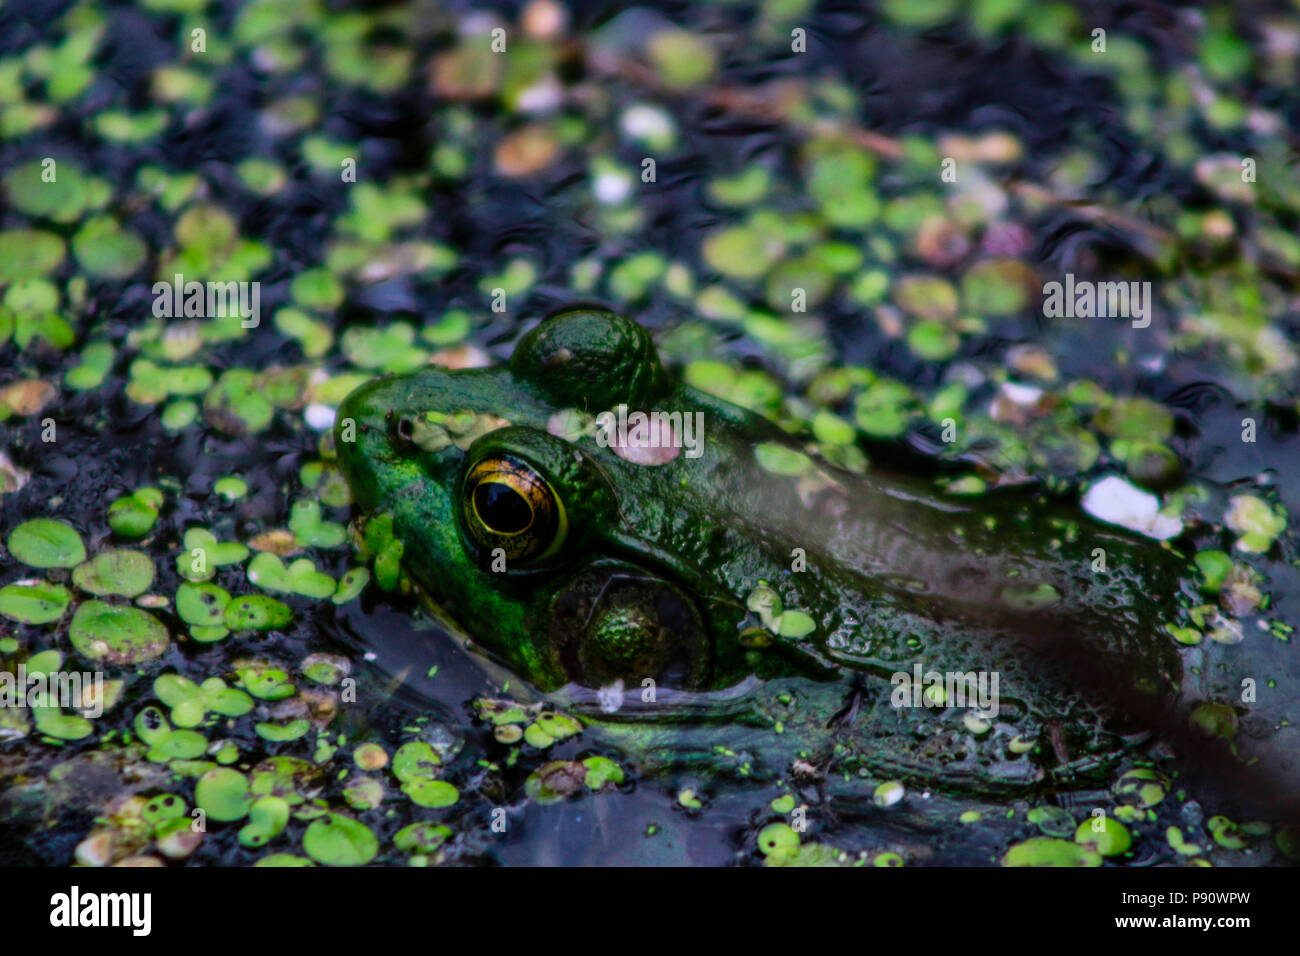 Northern Green Frog Servelas auf einem Felsen. Auch als die amerikanische Grasfrosch bekannt. Don Valley Ziegelei Park, Toronto, Ontario, Kanada. Stockfoto